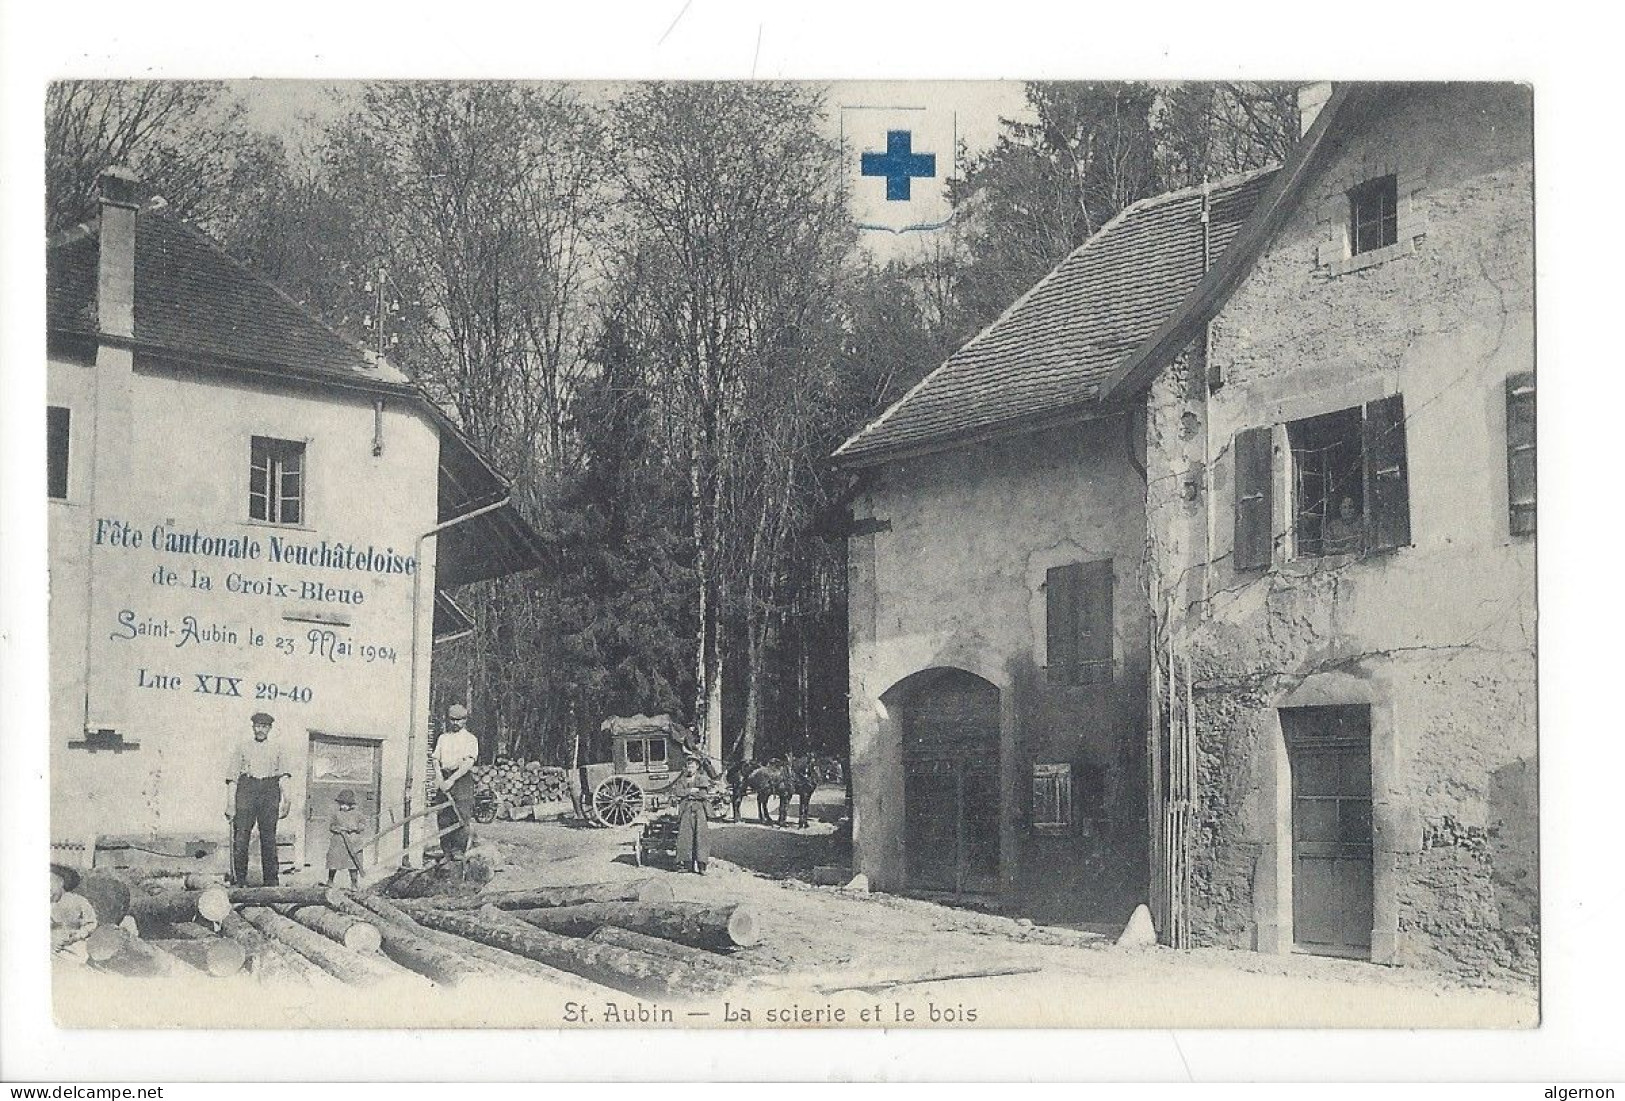 32067 - Saint-Aubin  La Scierie Et Le Bois Fête Cantonale Neuchâteloise De La Croix-Bleue 23 Mai 1904 - Saint-Aubin/Sauges